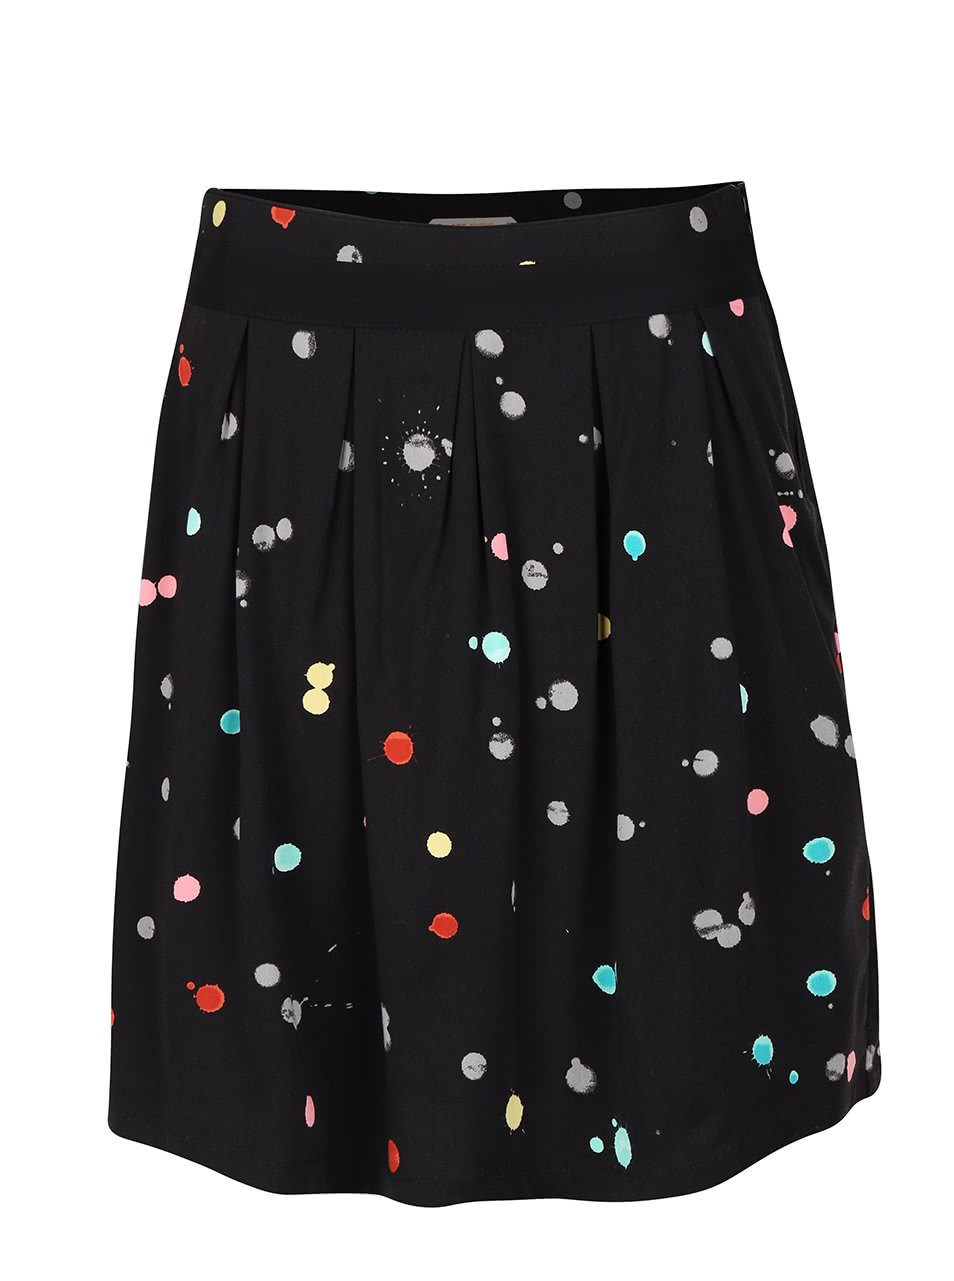 Černá sukně s barevnými puntíky Skunkfunk Libby